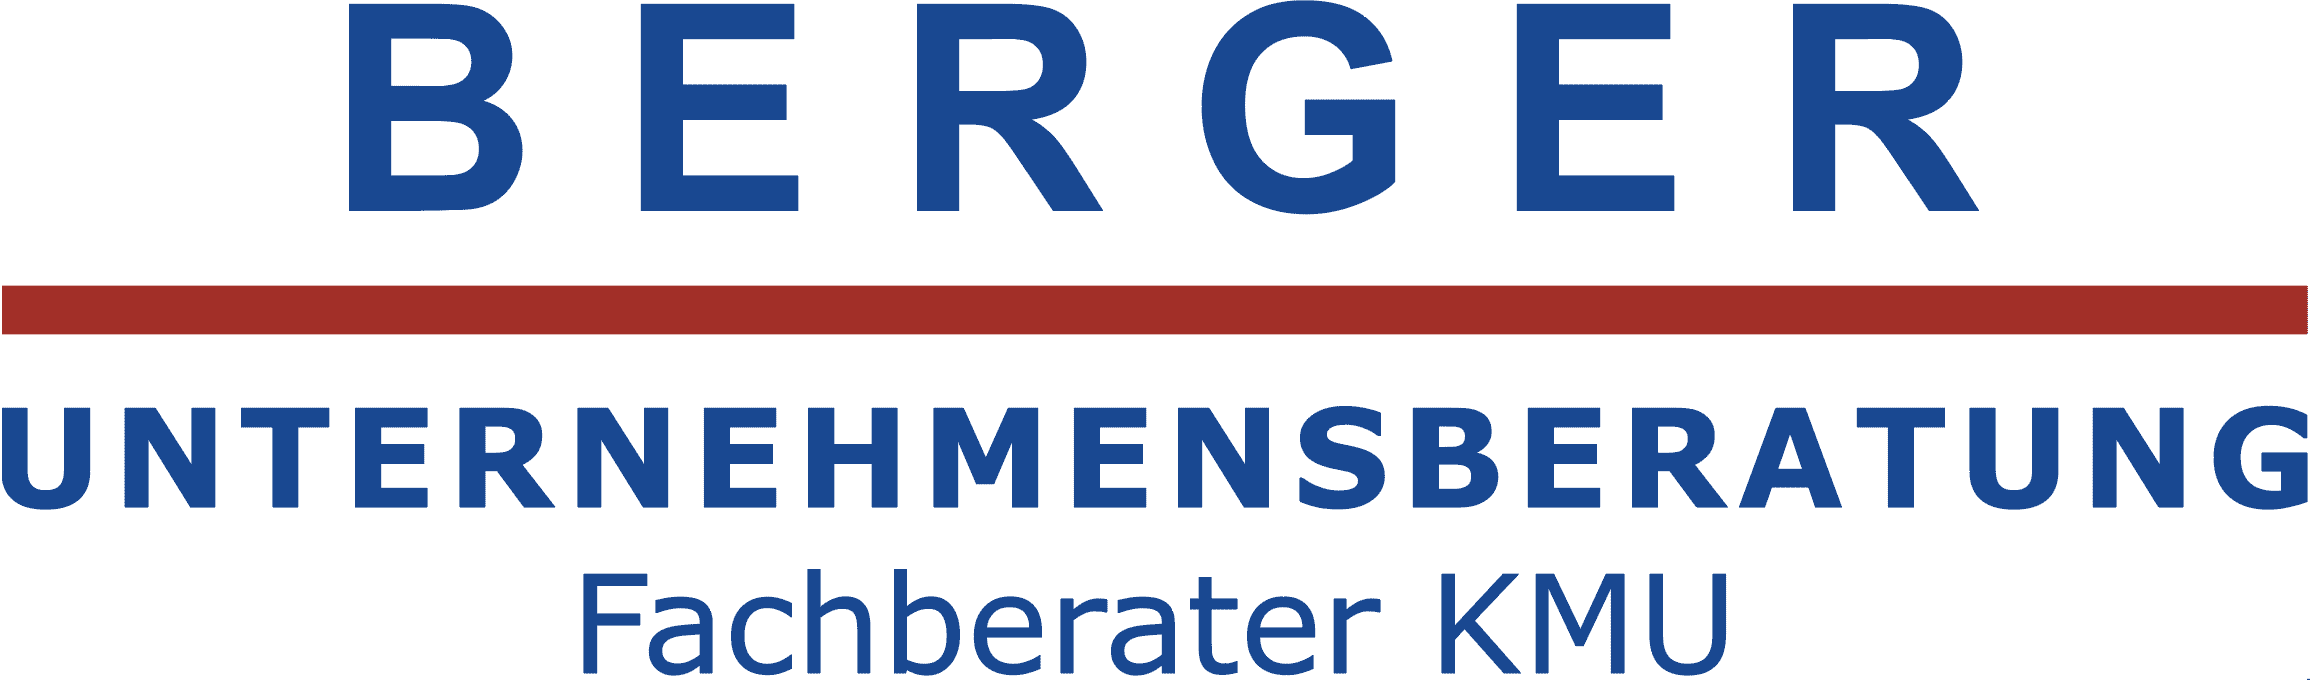 Berger Unternehmensberatung KMU